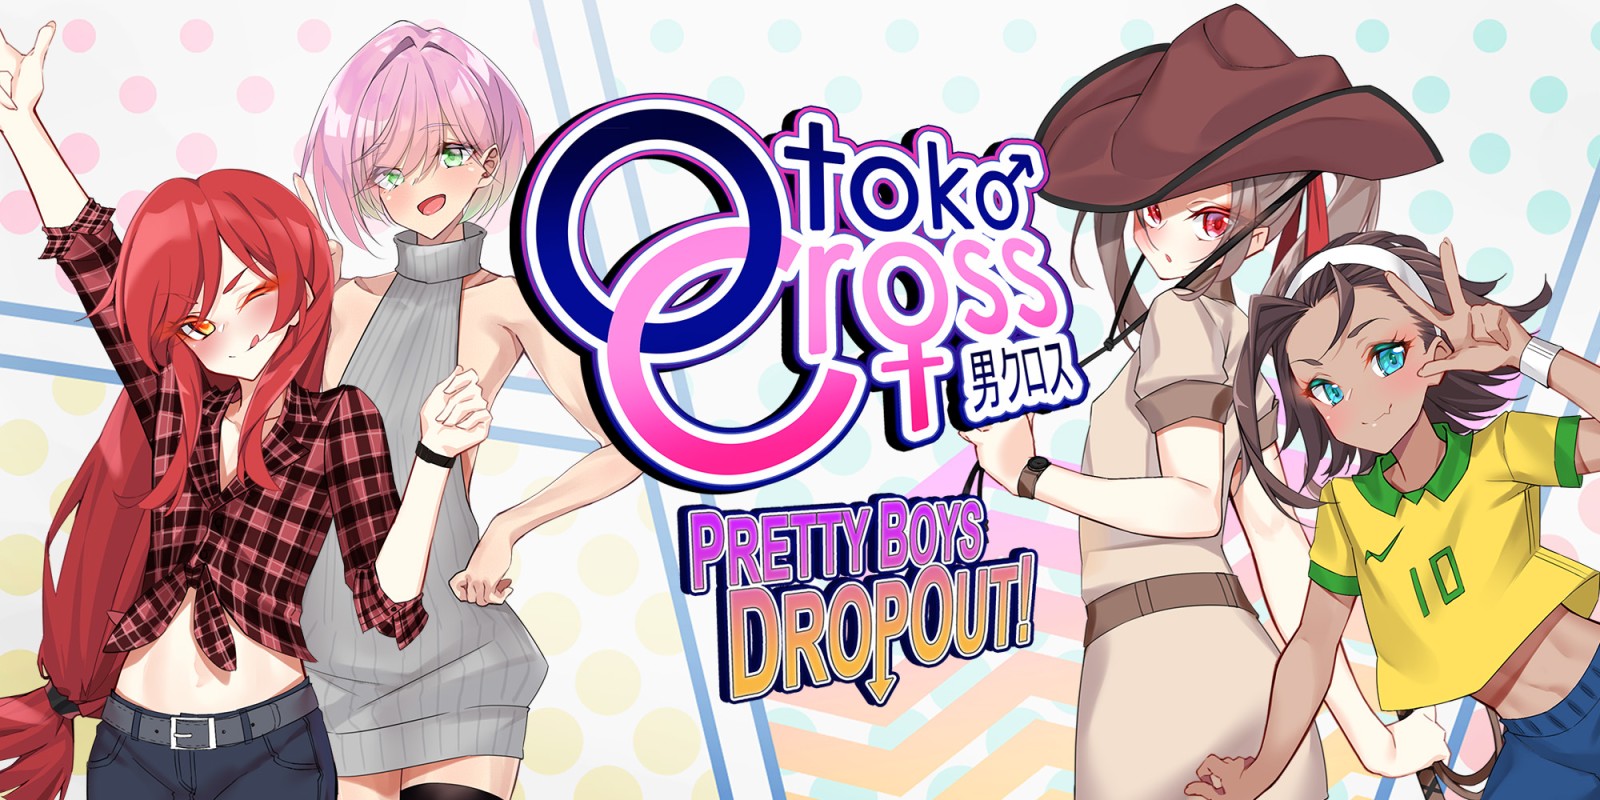 Otoko Cross: Pretty Boys Dropout!